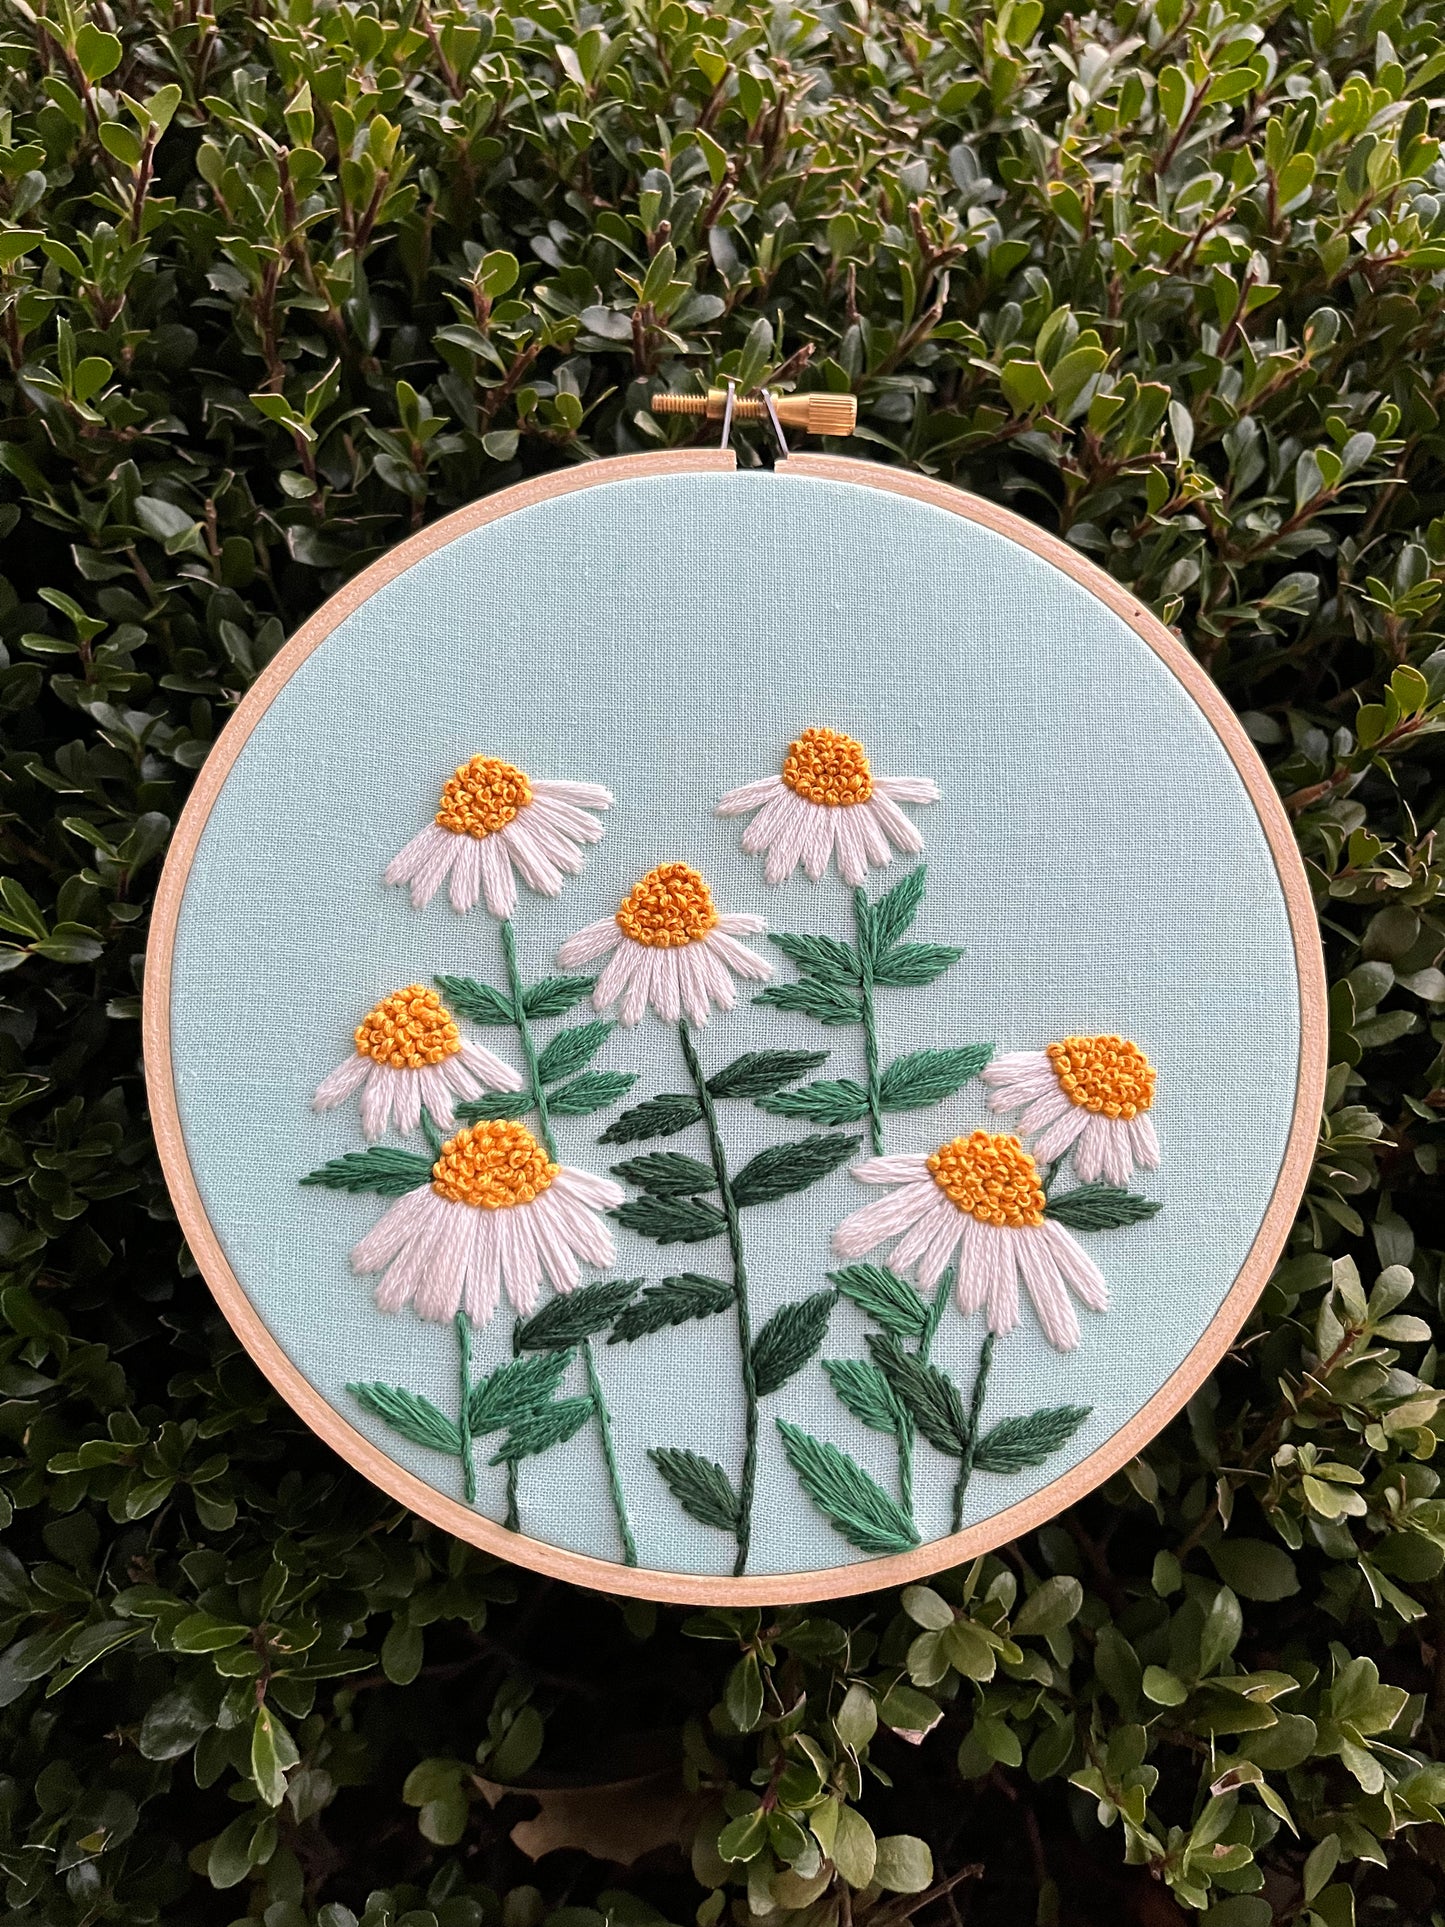 FULL KIT - Daisy Field Florals Kit - DIY Embroidery Kit, Floral Embroidery, Embroidery Pattern